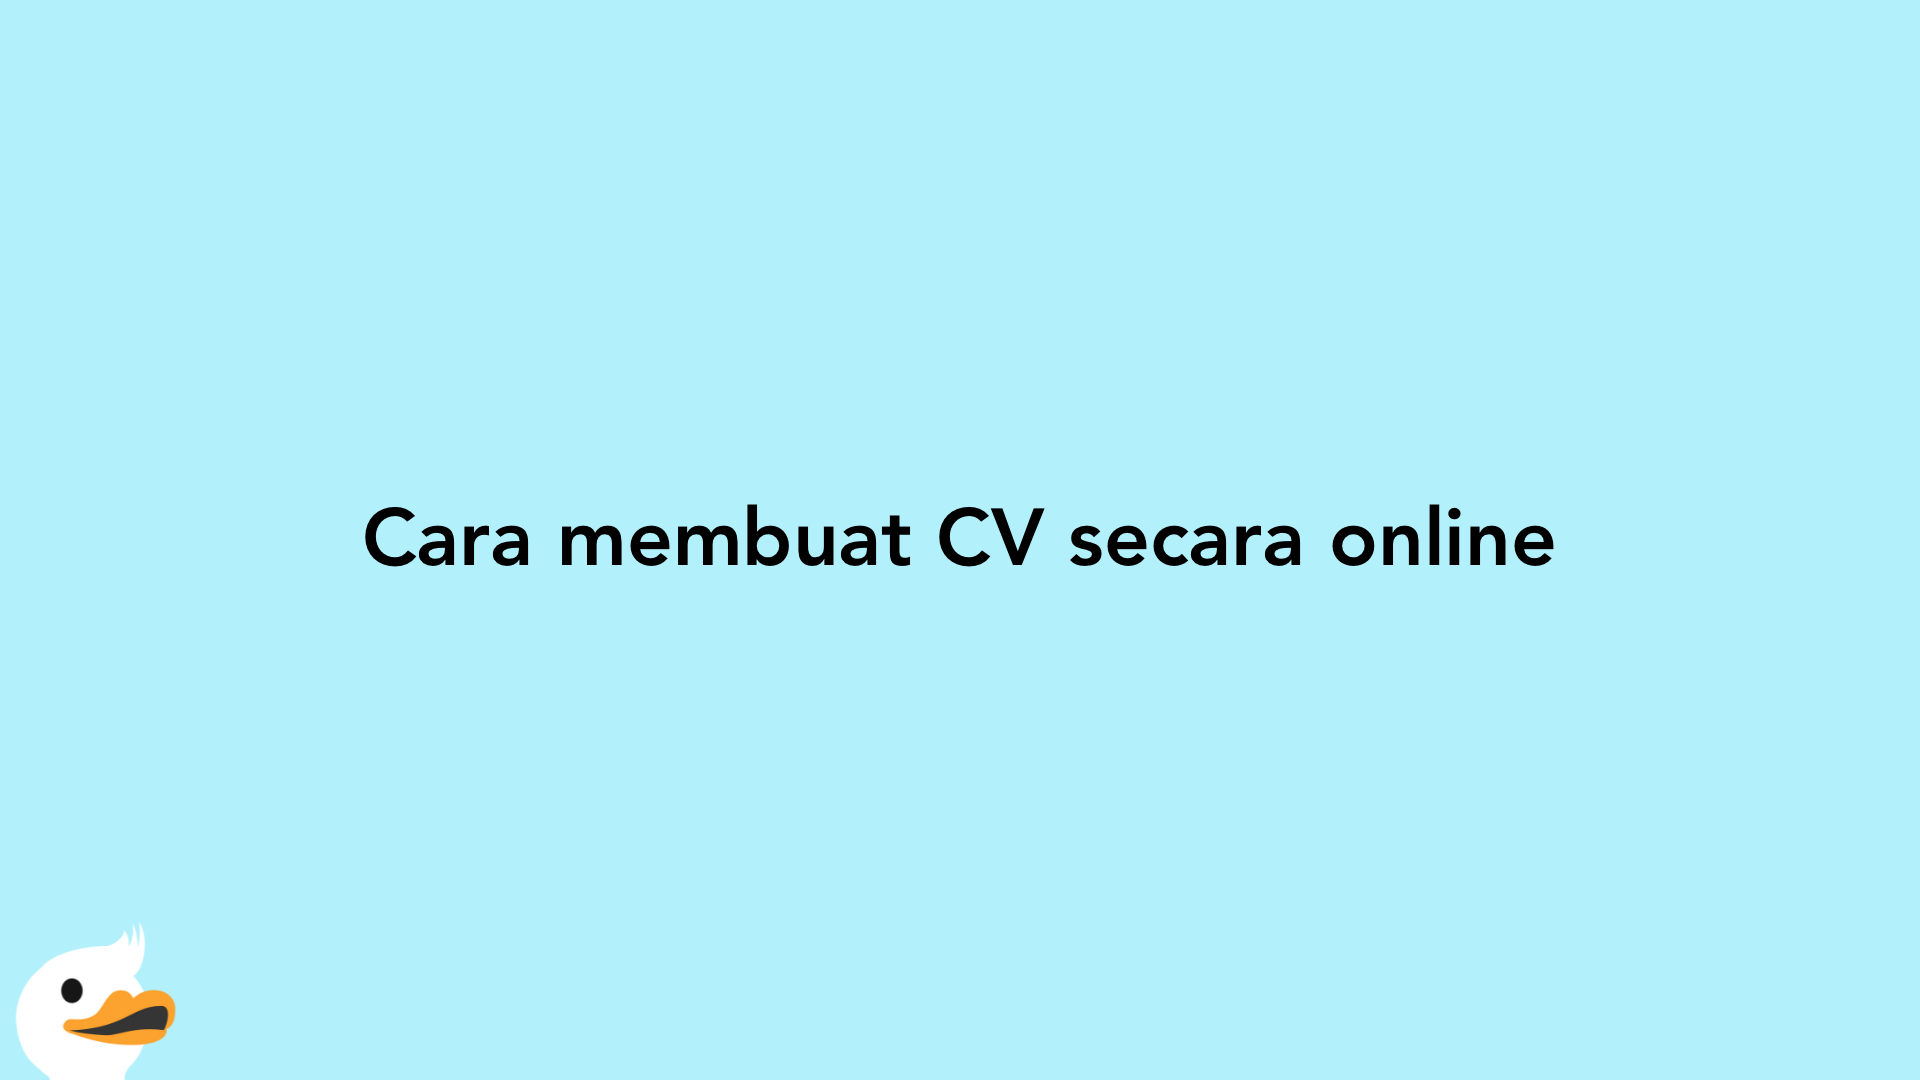 Cara membuat CV secara online